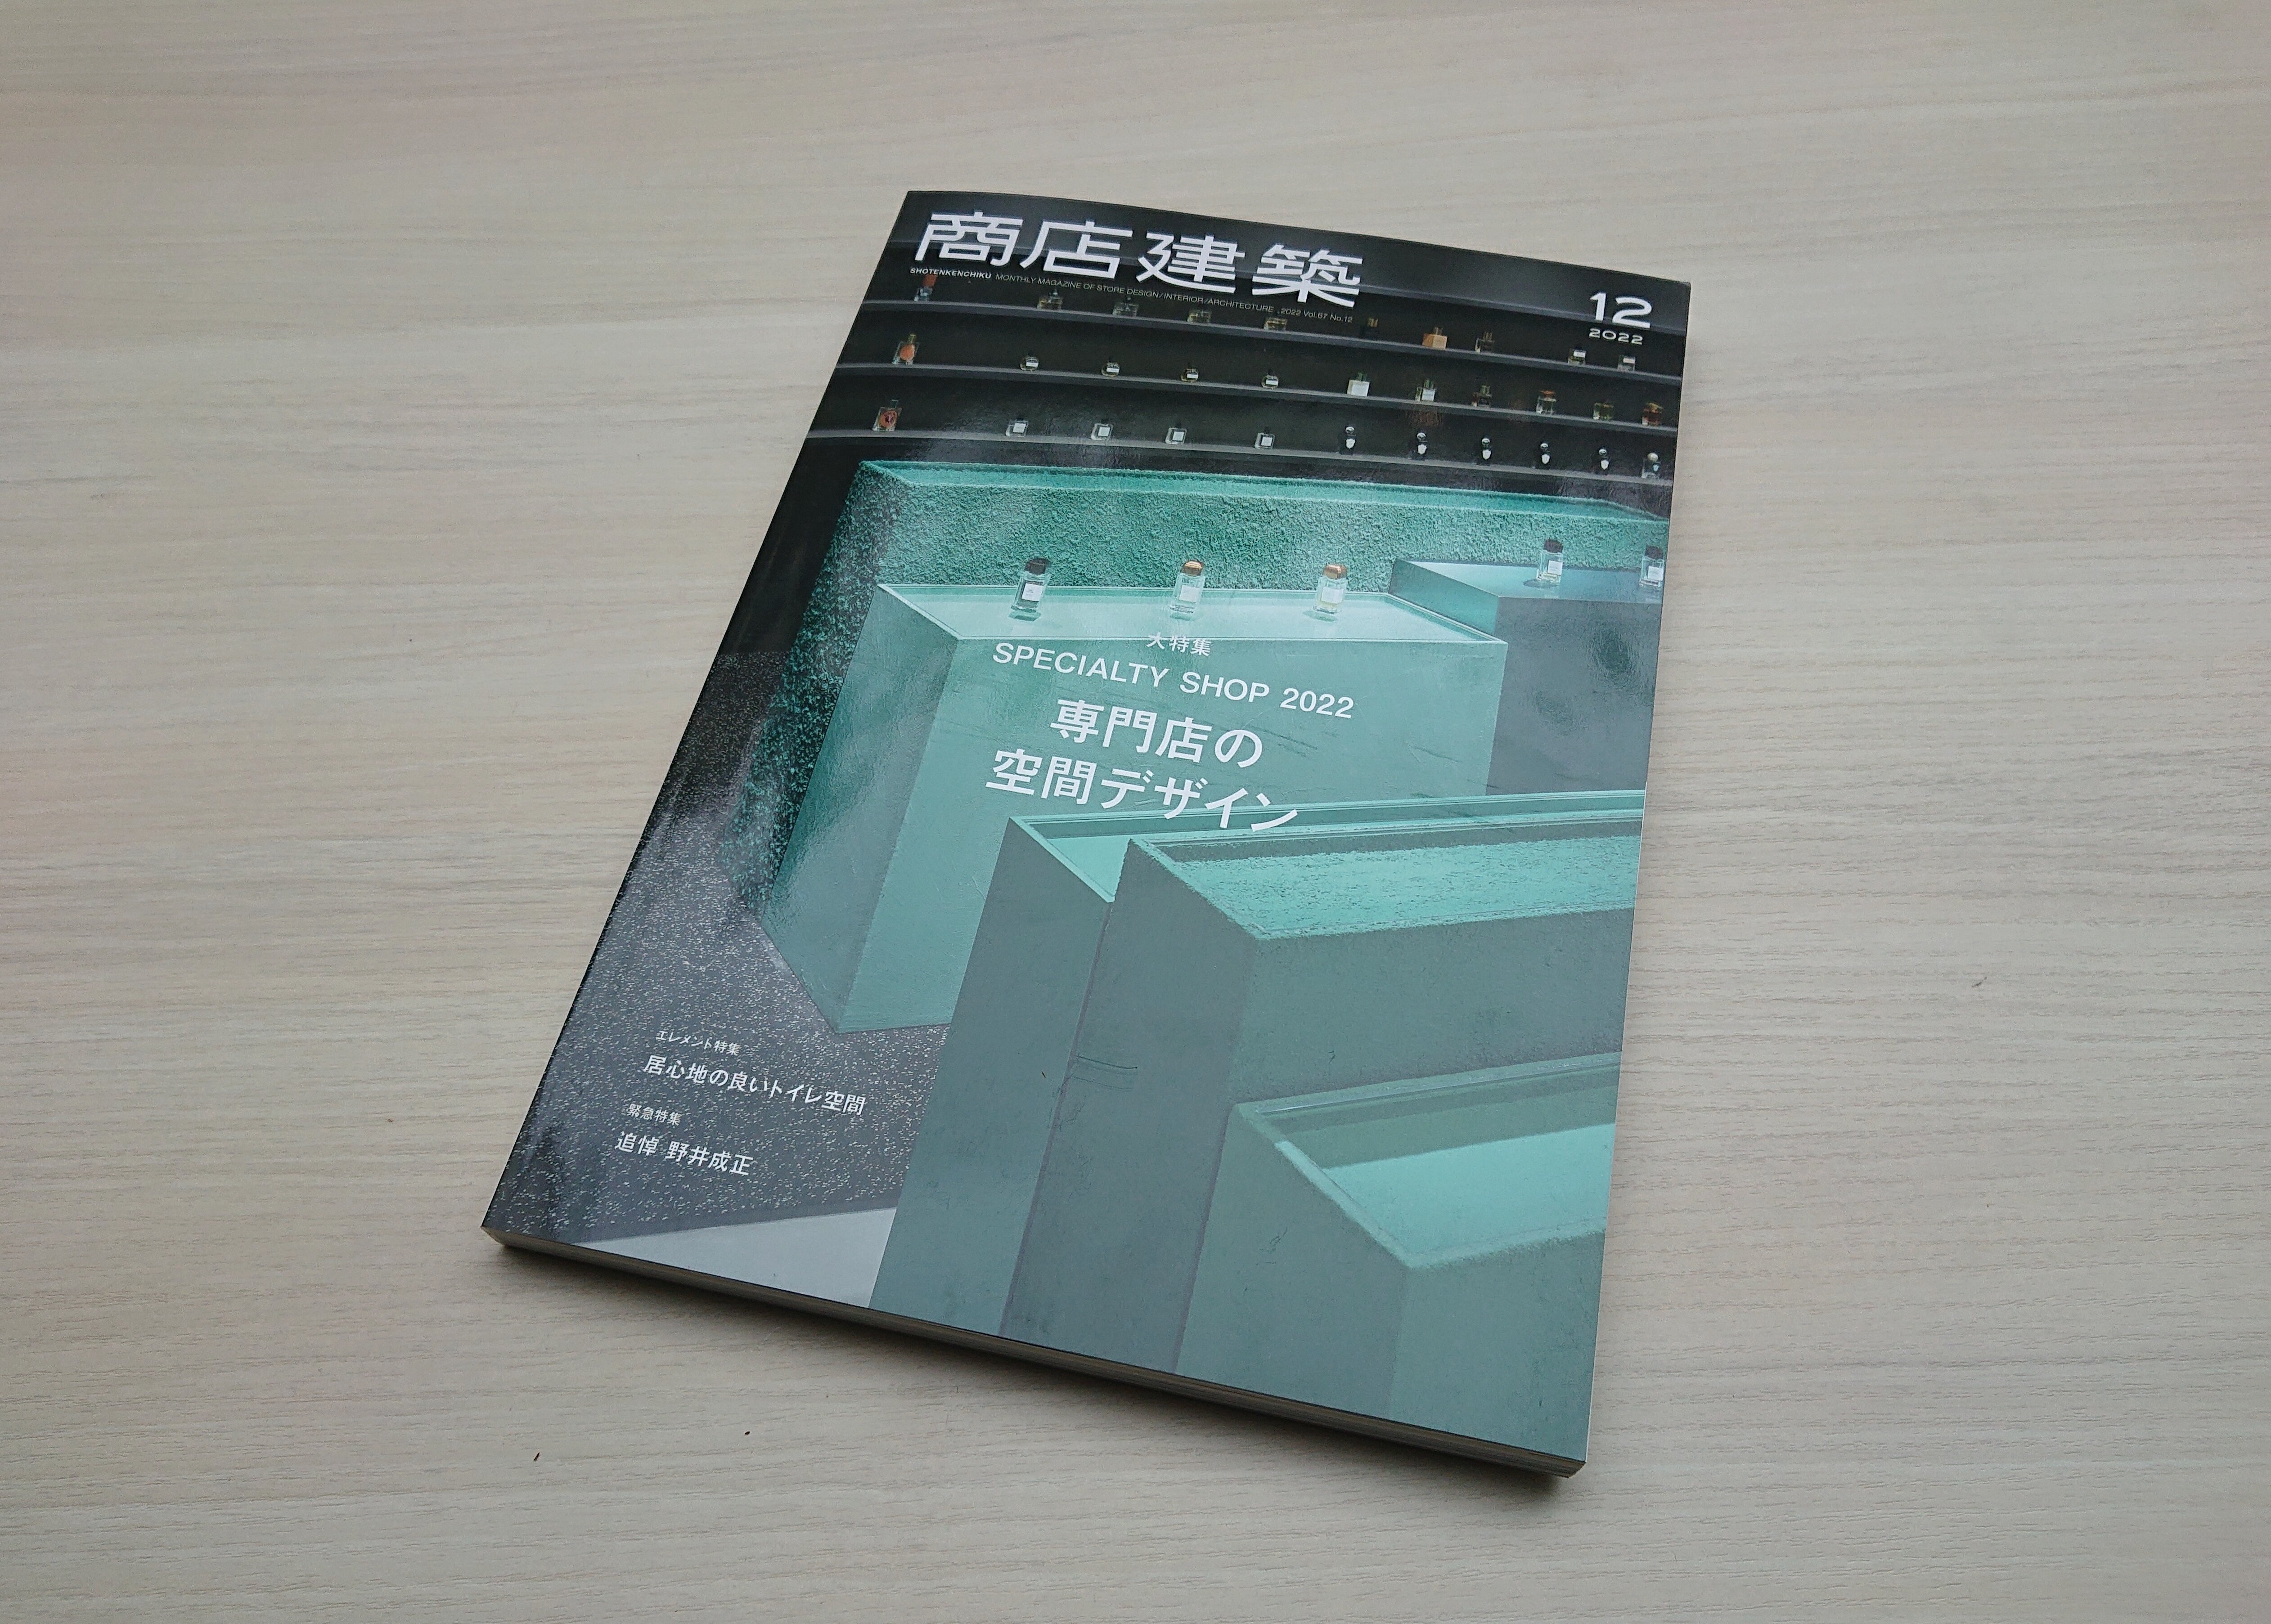 弊社がディレクションを担当した MOONSTAR JIYUGAOKA が、雑誌『商店建築』2022年12月号で紹介されました